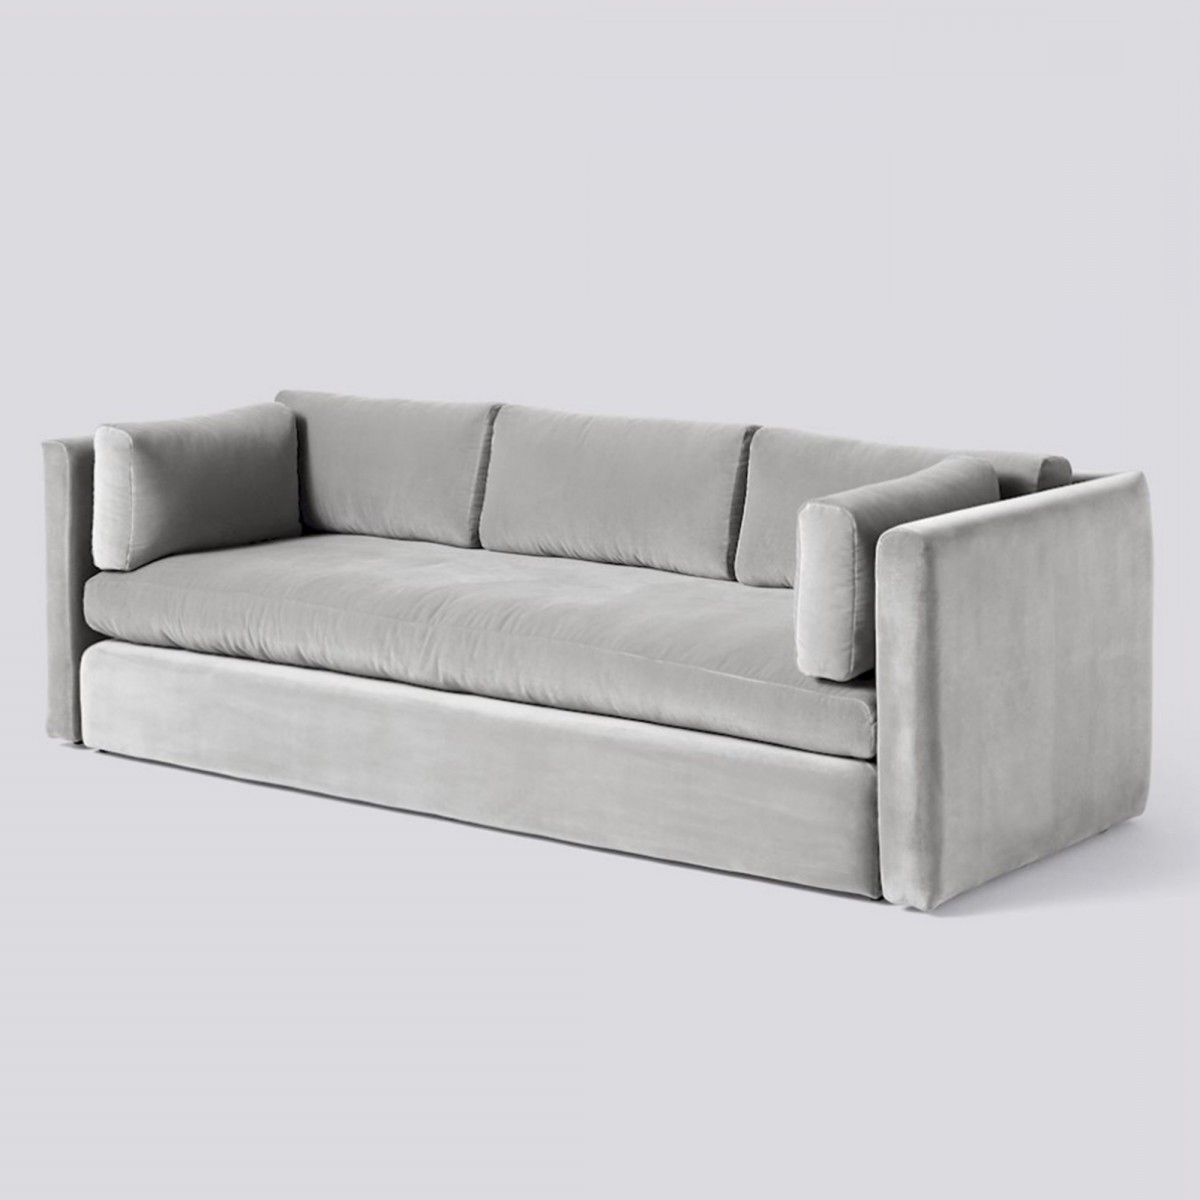 Hackney Light Grey Velvet Sofa – Hay | Grey Velvet Sofa, Hay Hackney Sofa,  Classic Sofa Designs Pertaining To Light Gray Velvet Sofas (View 12 of 20)